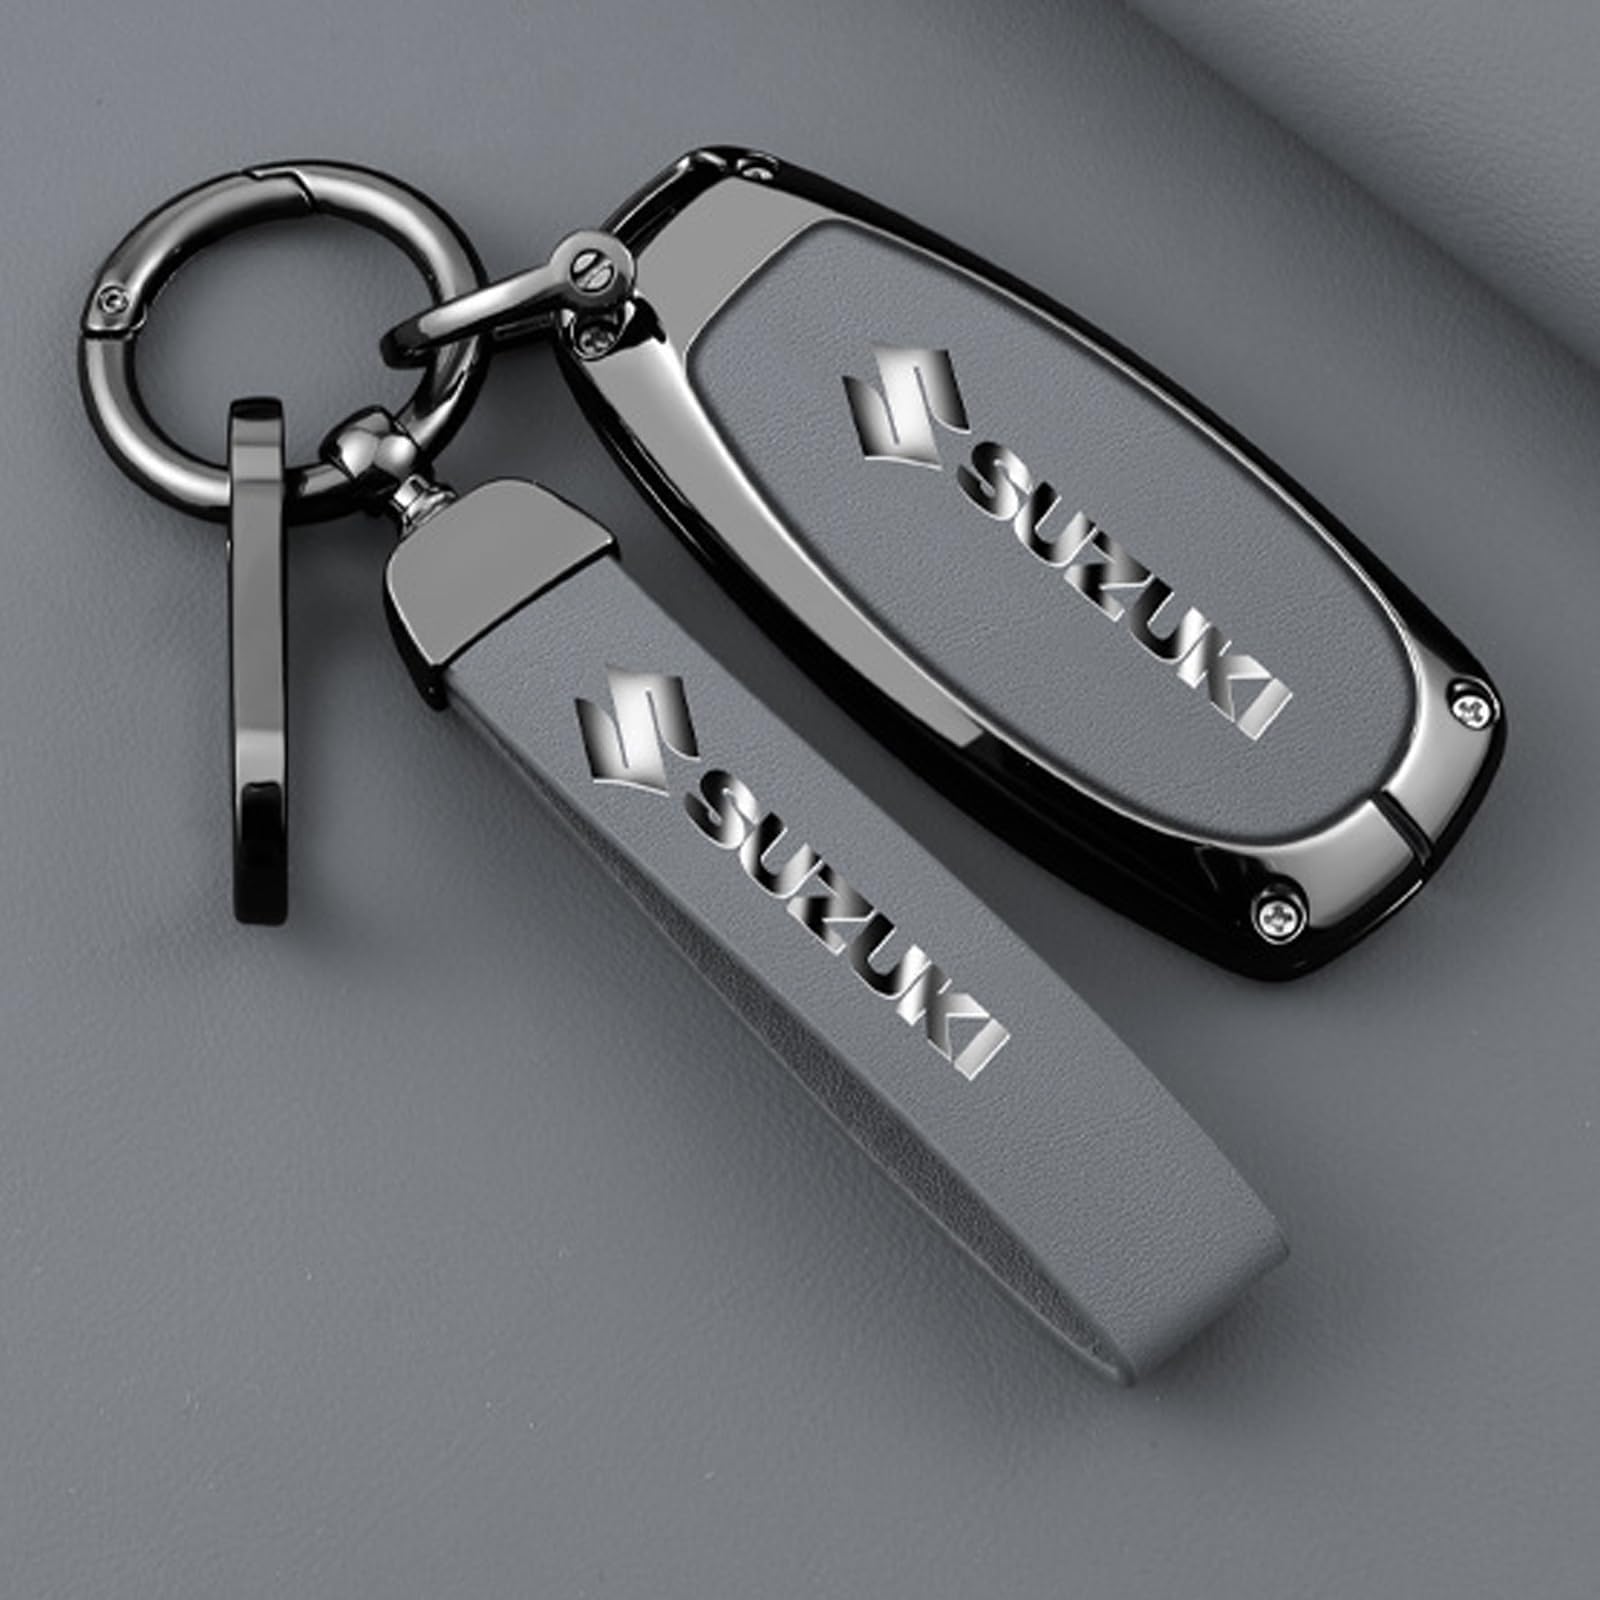 Autoschlüssel Hülle für Suzuki Vitara SX4, Staubdicht Gute Qualität Autoschlüsselgehäuse, Verschleißfest Auto Schlüssel Schutzhülle Schlüsselbox Cover,A Grey von PUBIBD